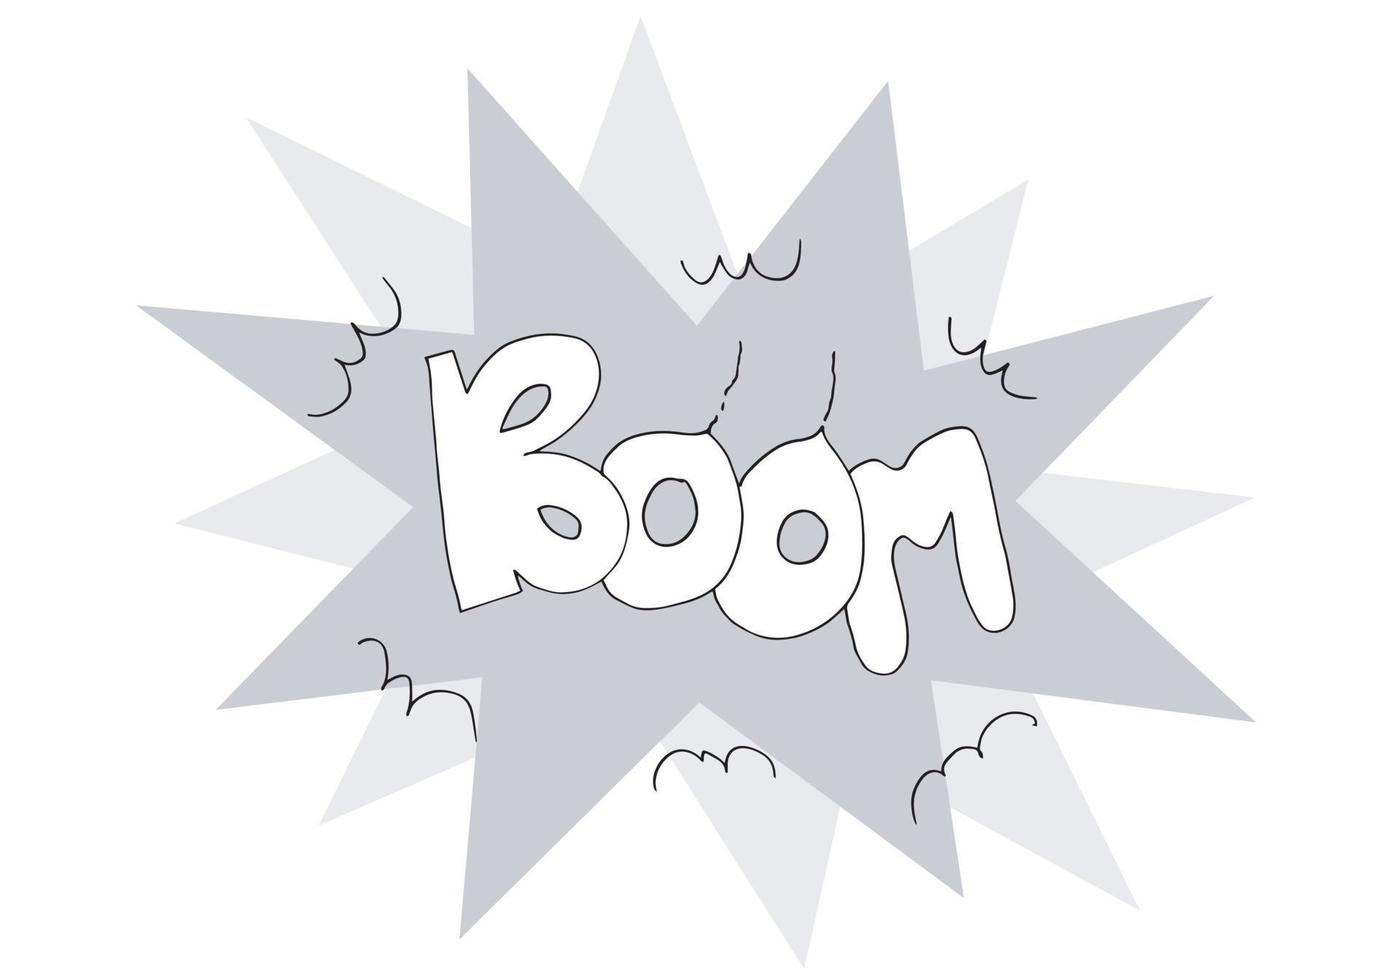 vettore schizzo fumetti parola - boom isolato su sfondo bianco.